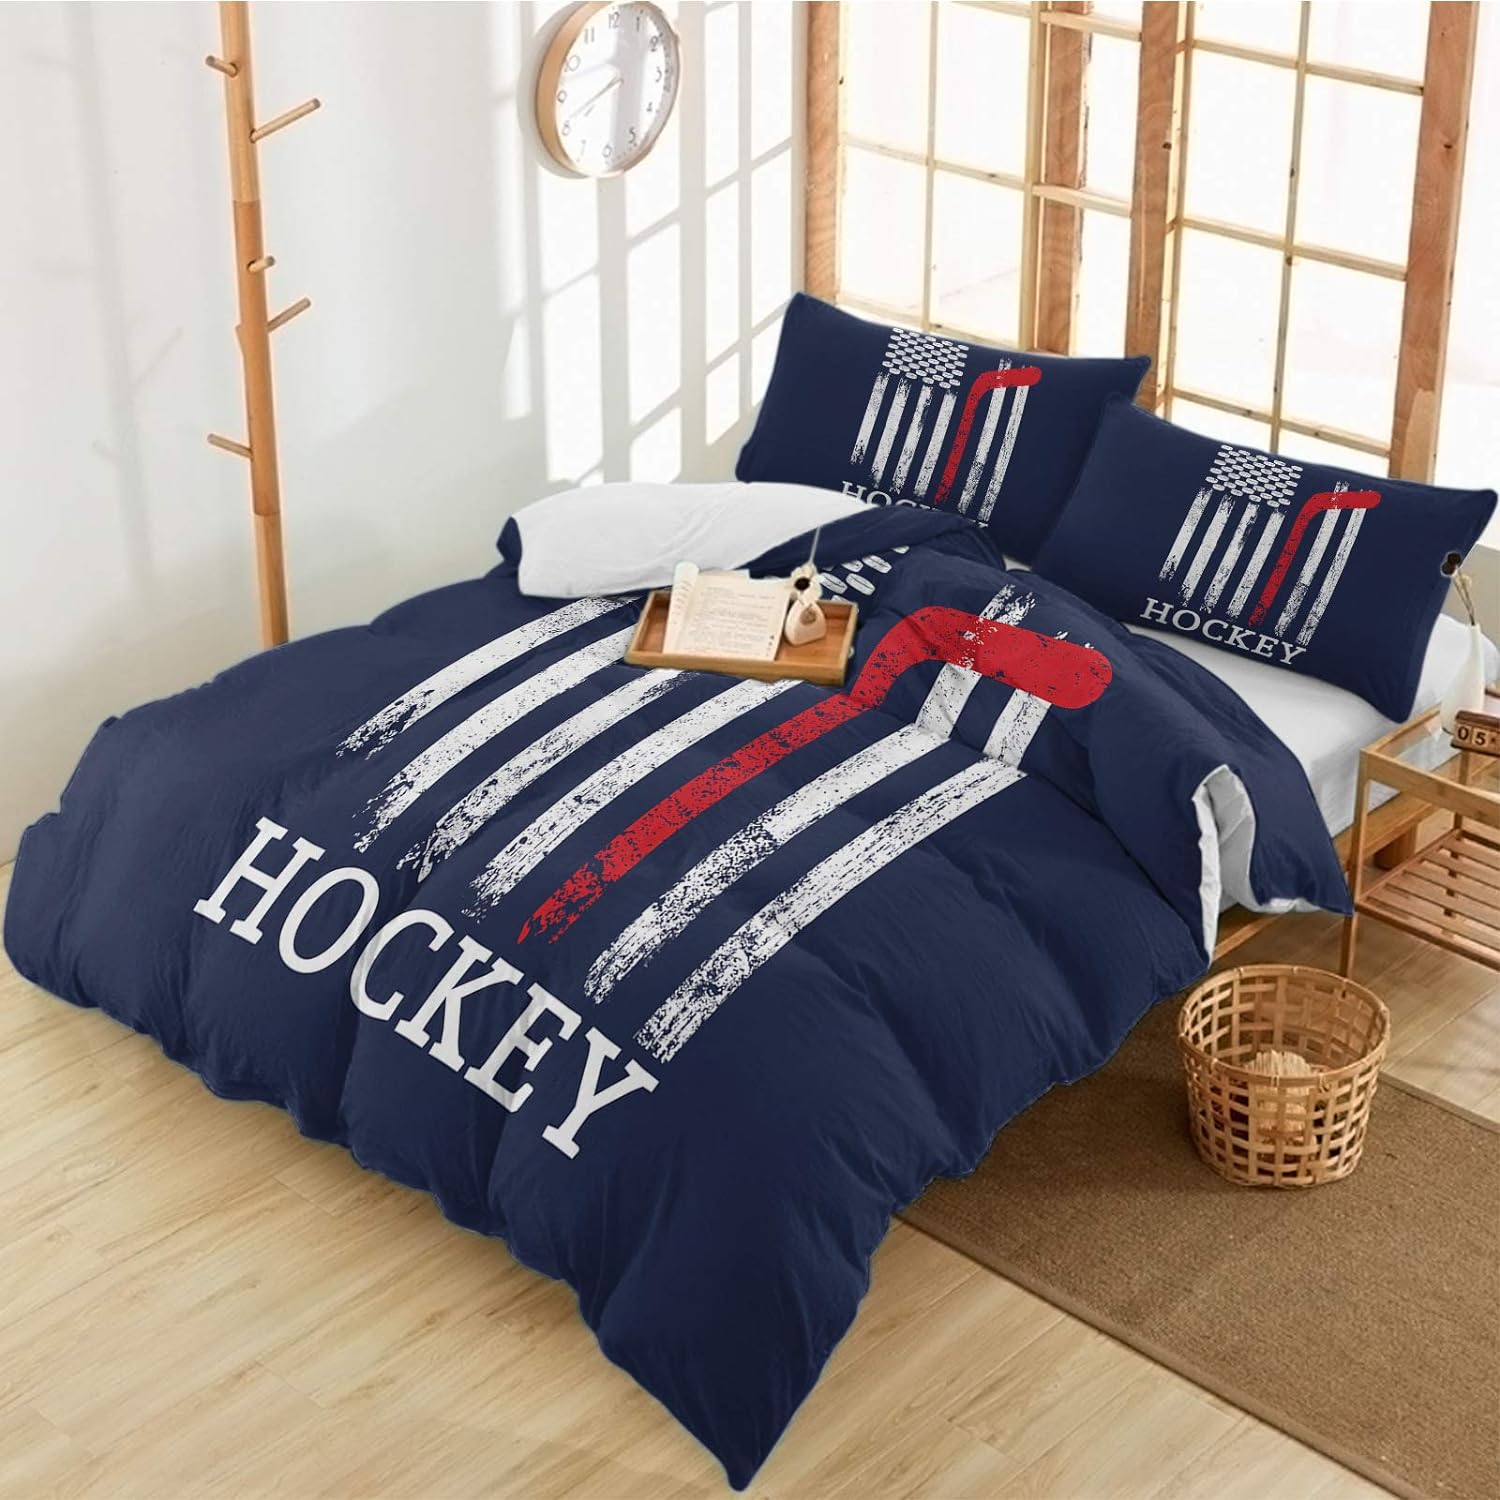 Queener Home 3 Piece Hockey Bedding Set